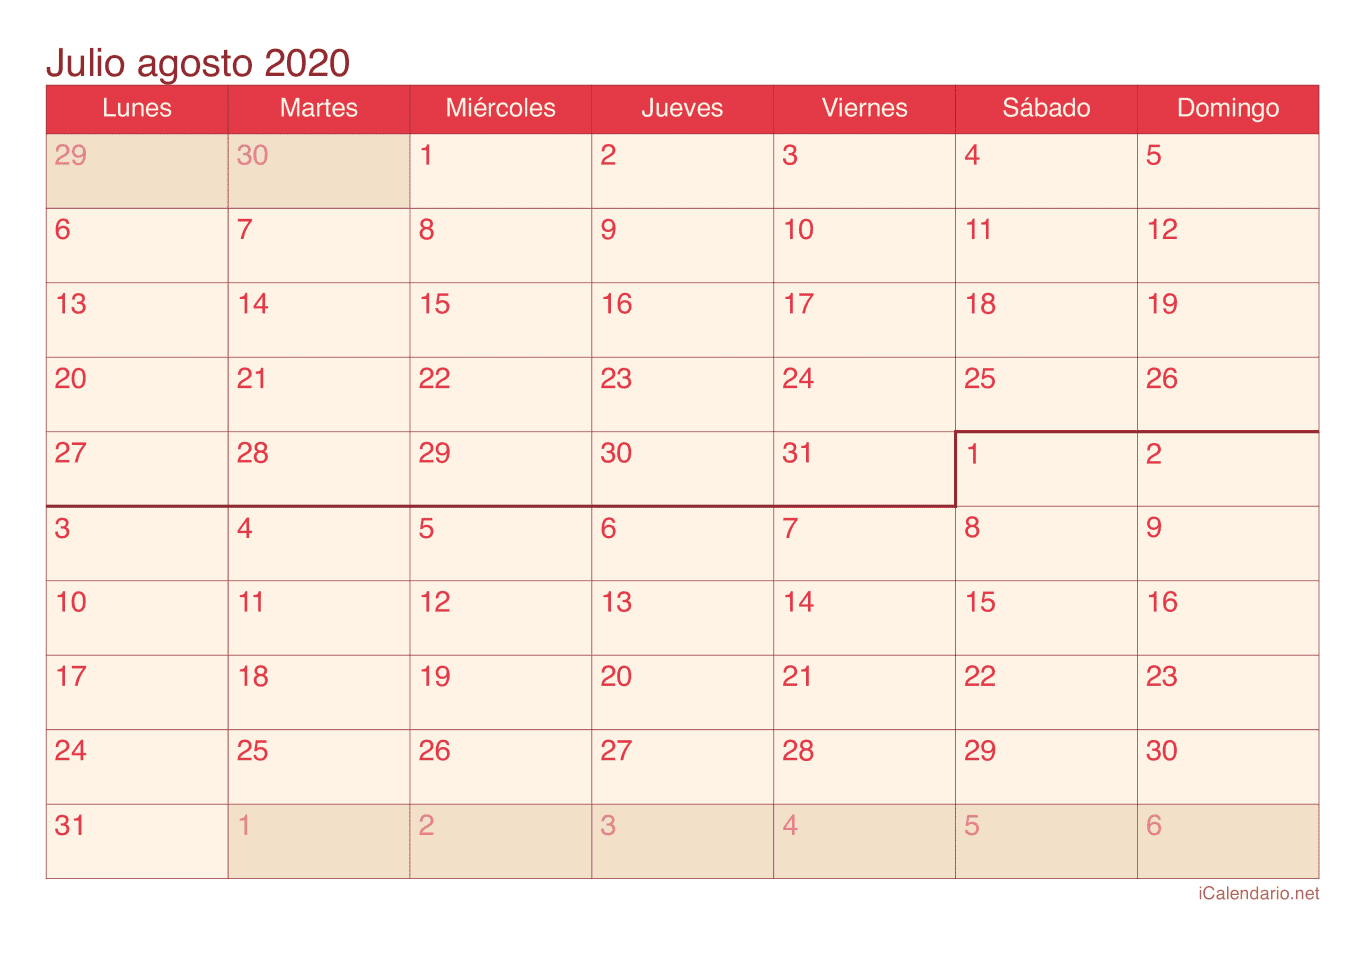 Calendario de julio agosto 2020 - Cherry